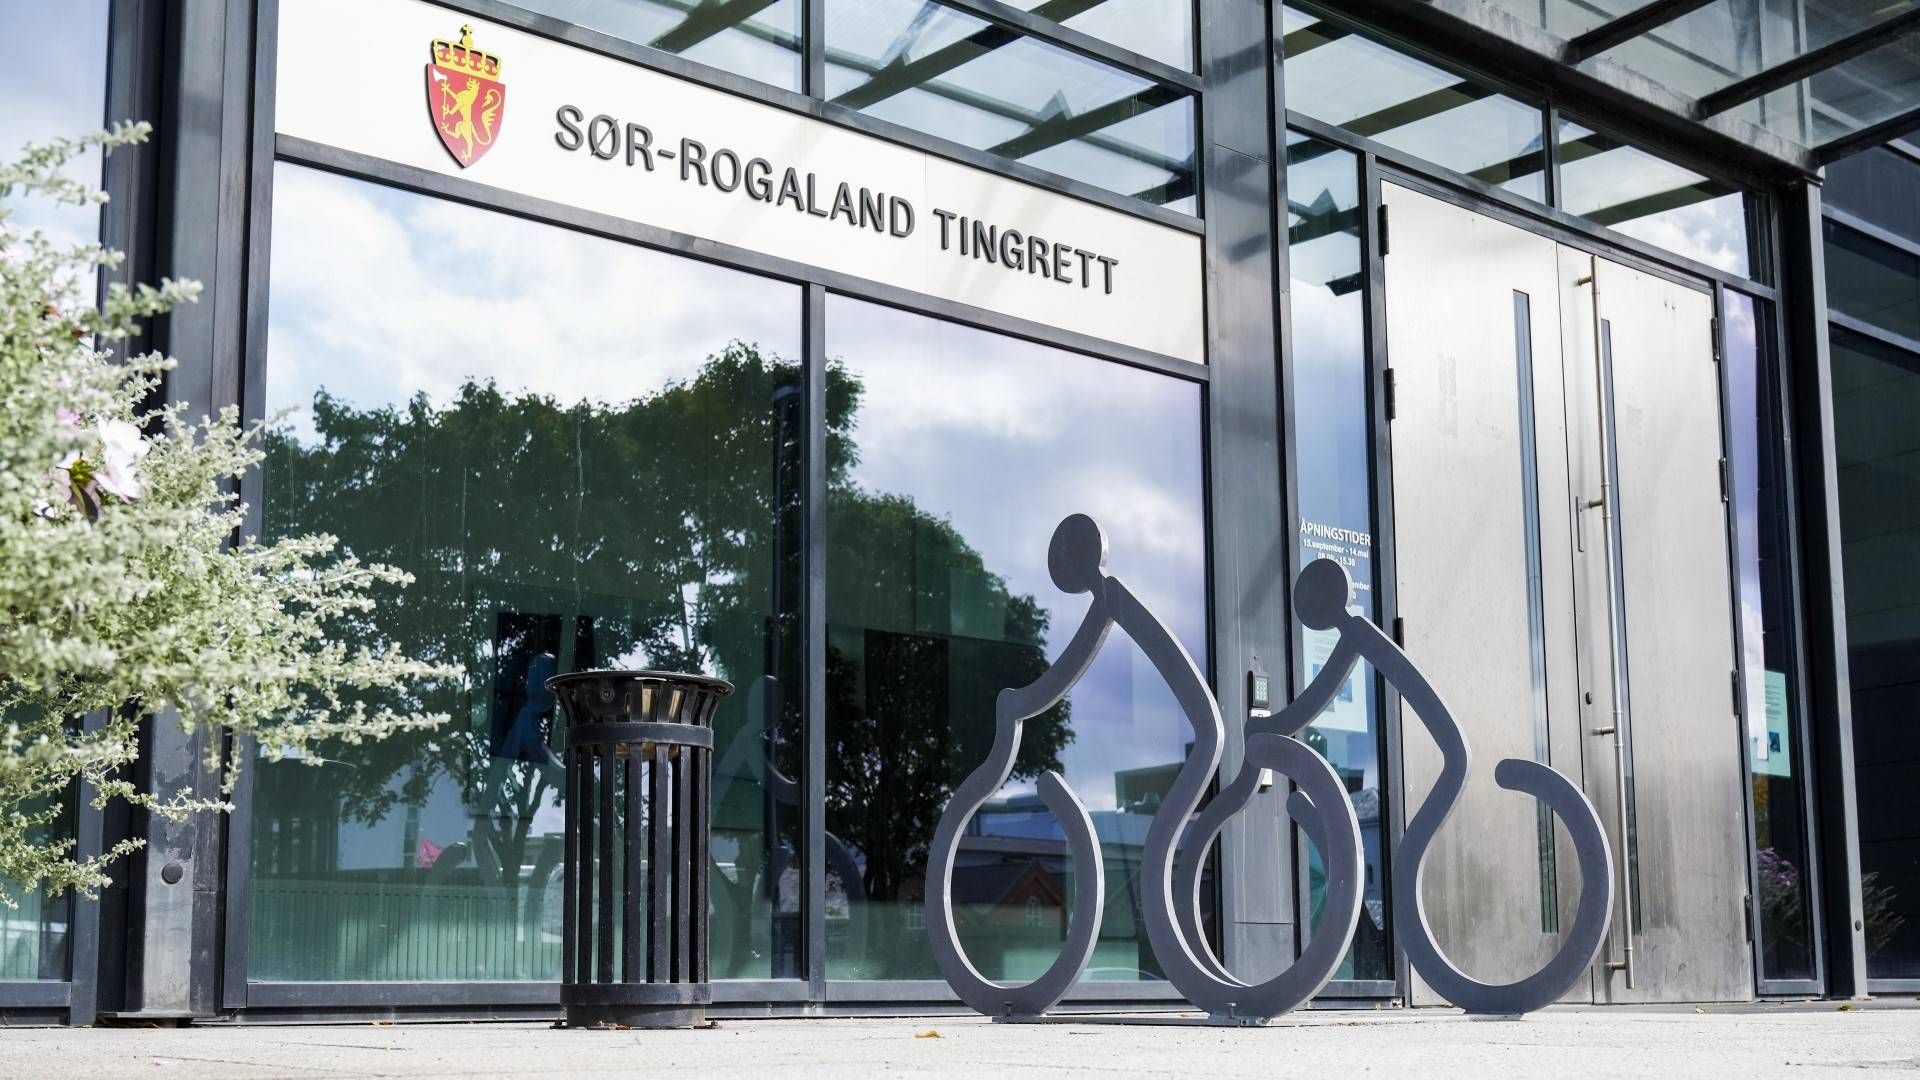 Sør-Rogaland tingrett, rettssted Sandnes. | Foto: Jan Kåre Ness / NTB